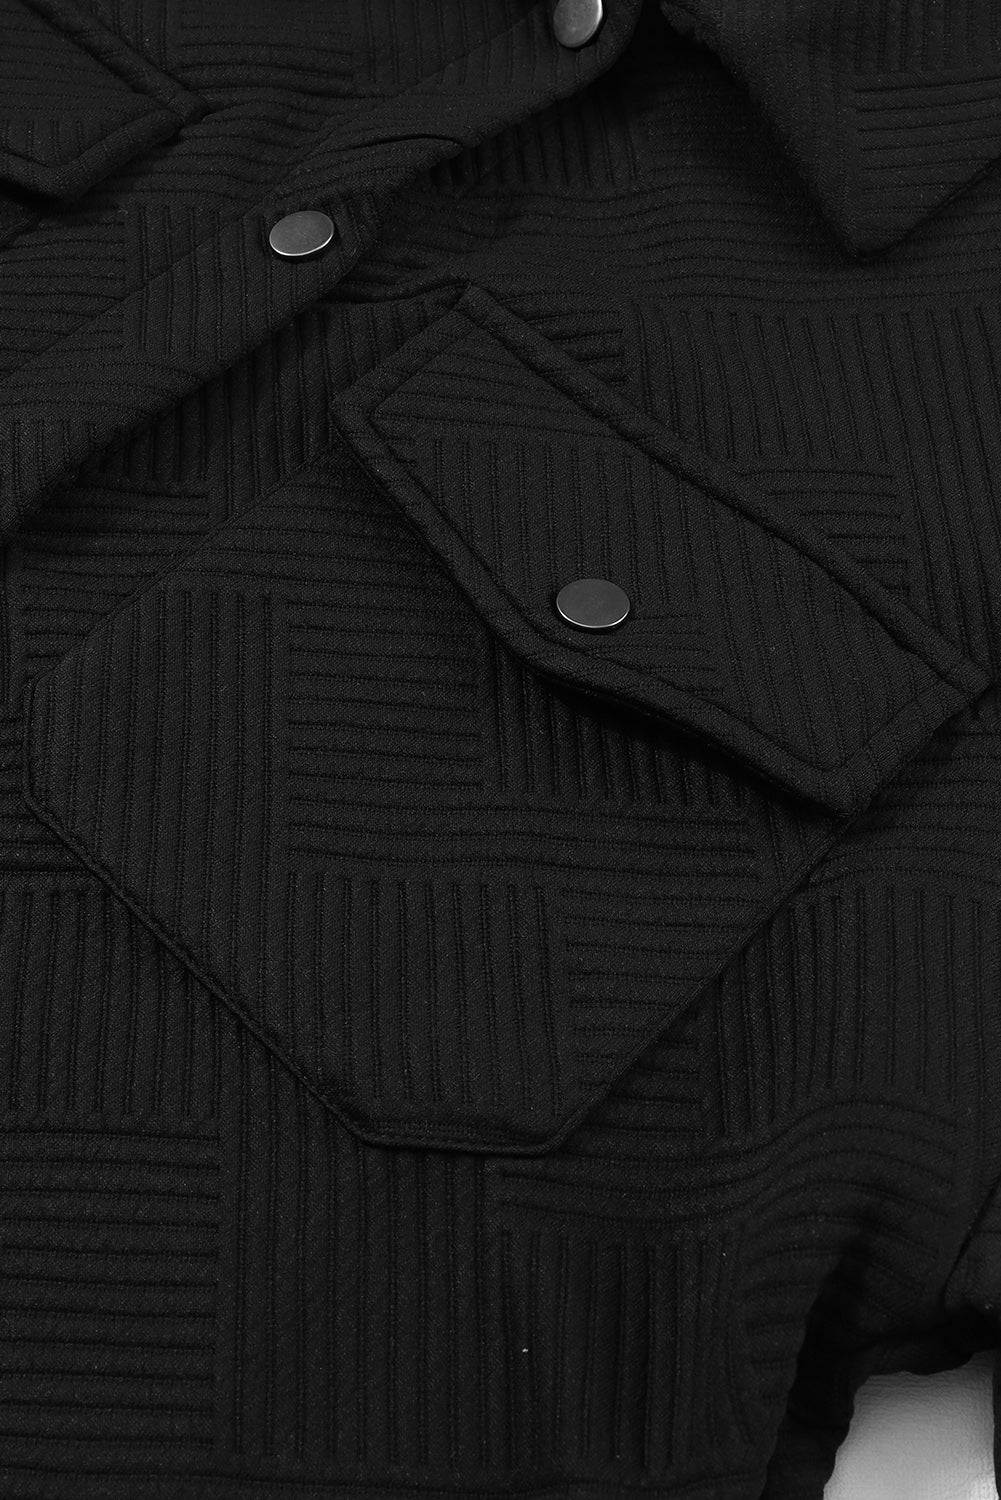 Giacca abbottonata con tasca con patta strutturata nera solida